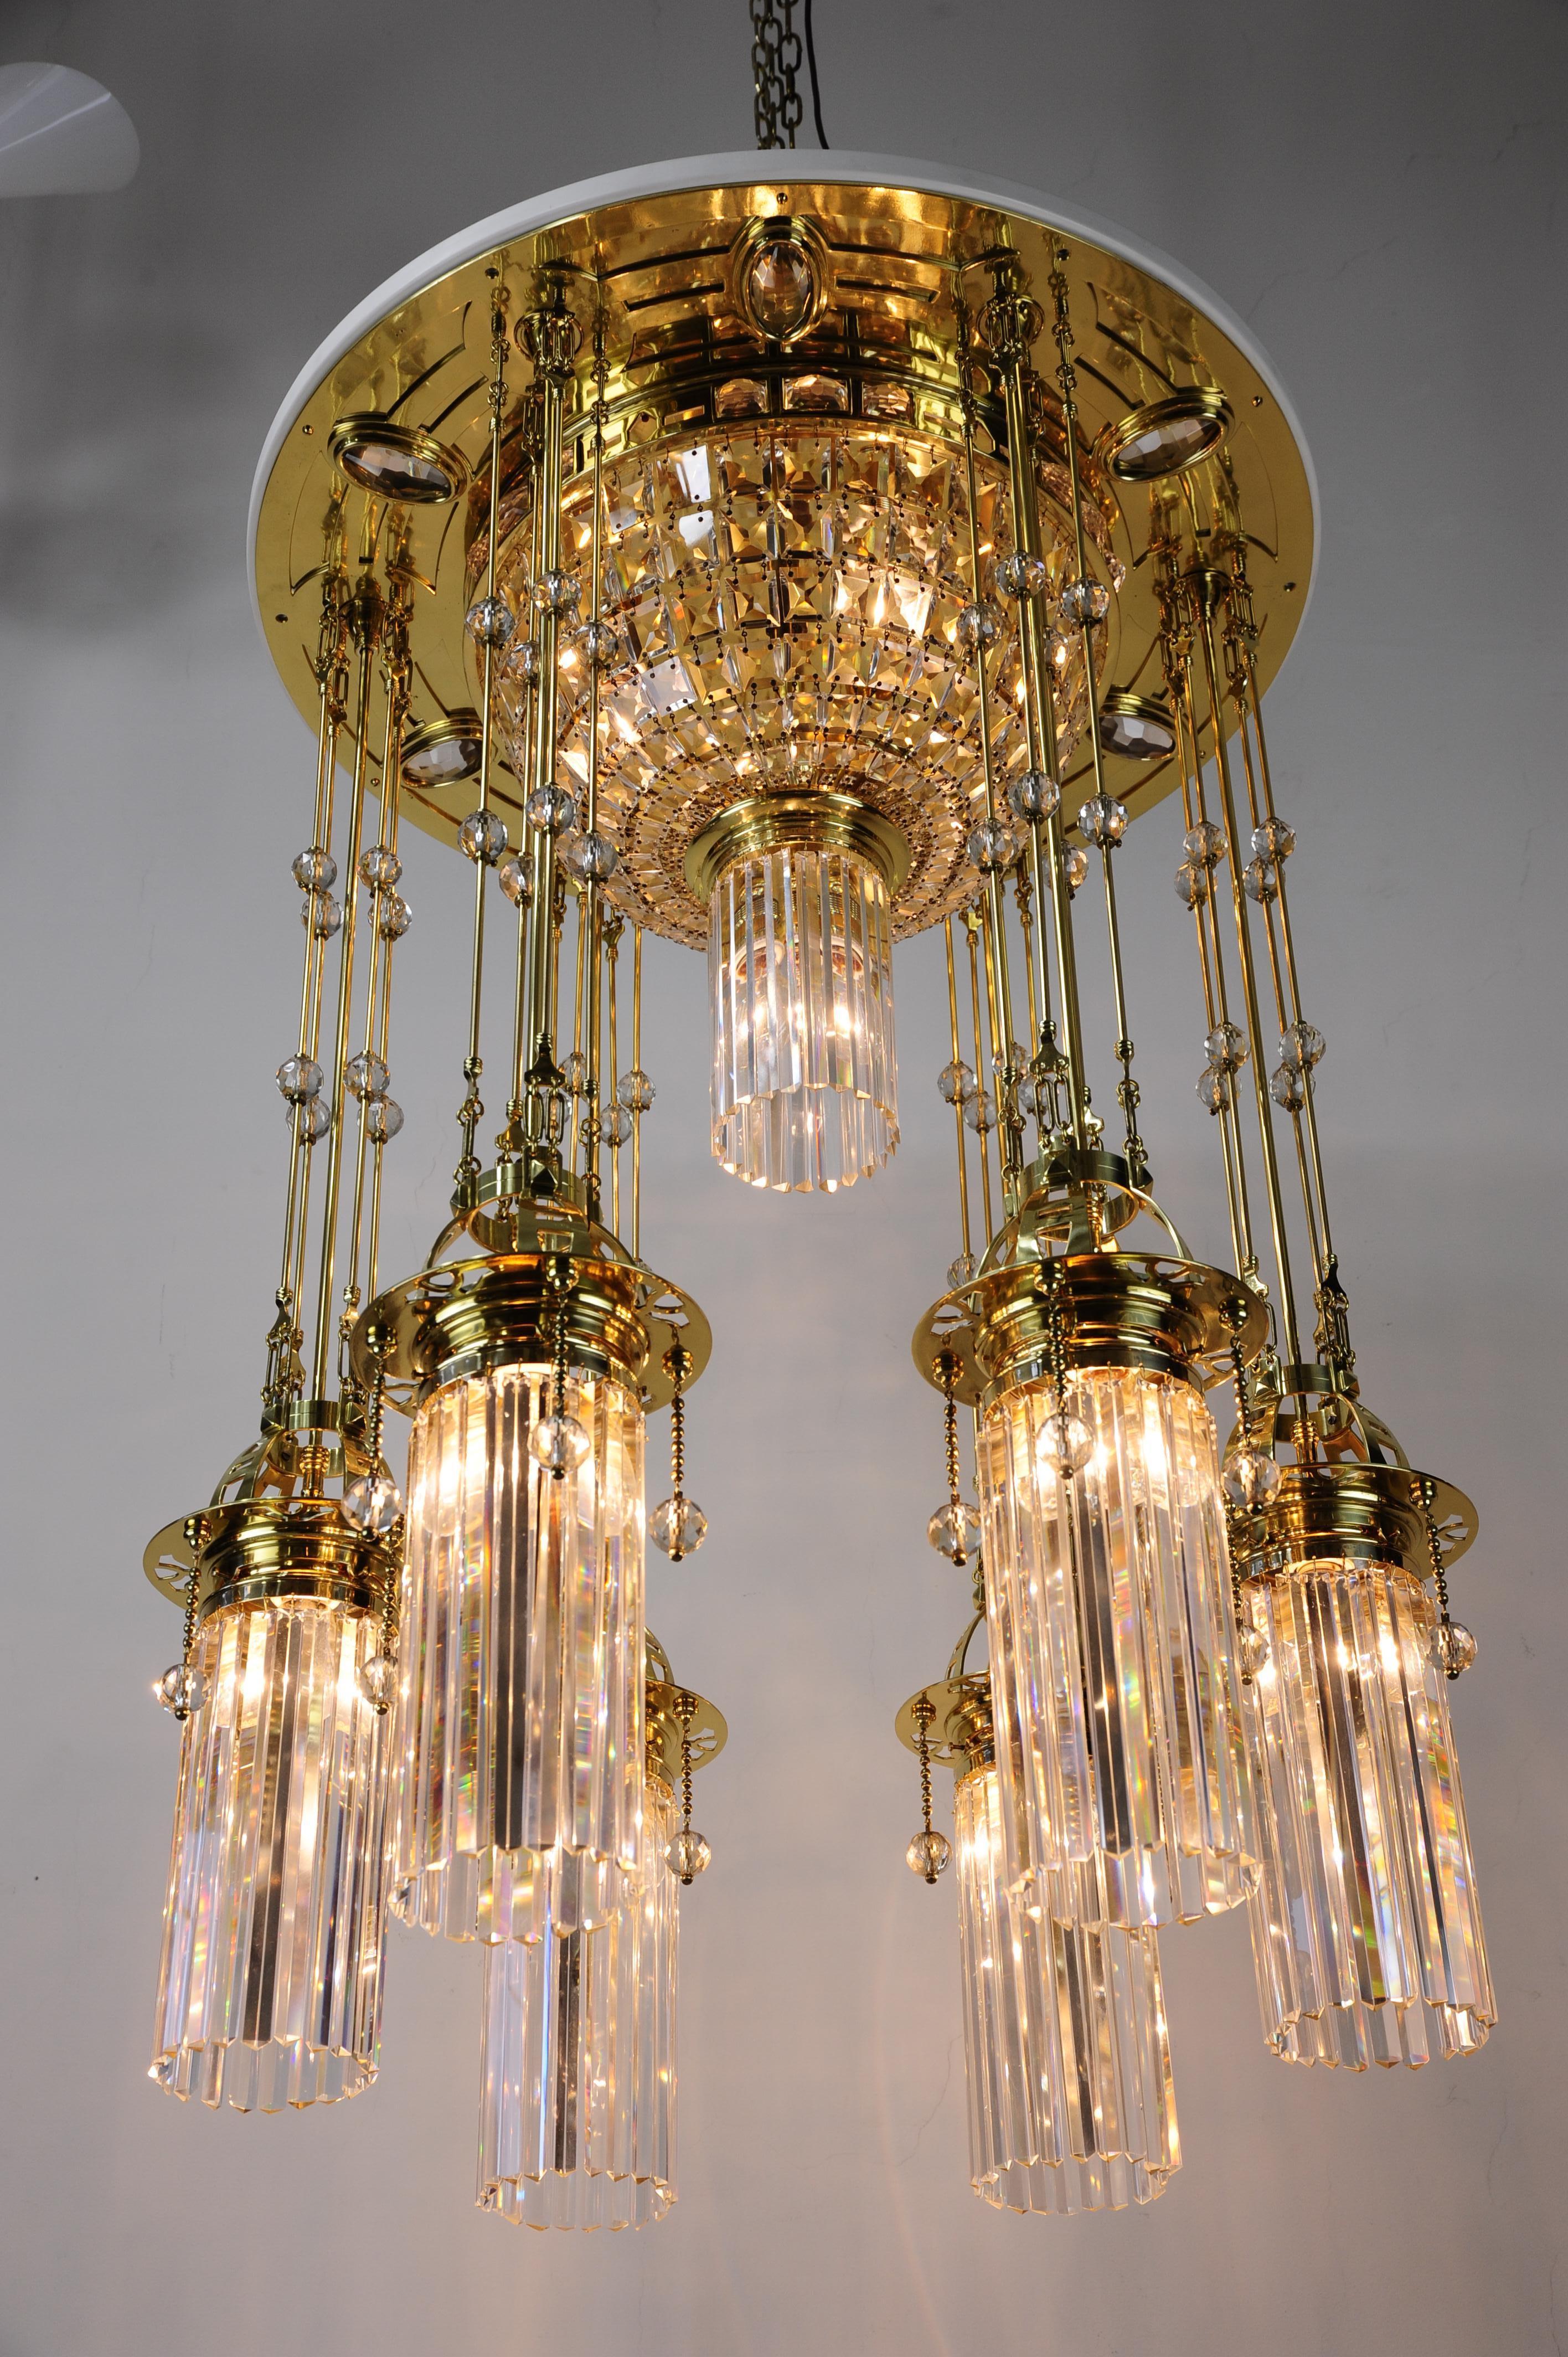 Magnifique et immense lustre Art Déco Vienne des années 1920.
Laiton poli et émaillé au four.
Les parties en cristal du lustre sont d'origine.
Le lustre a été restauré par des experts et le cristal a été soigneusement nettoyé à la main.
Le